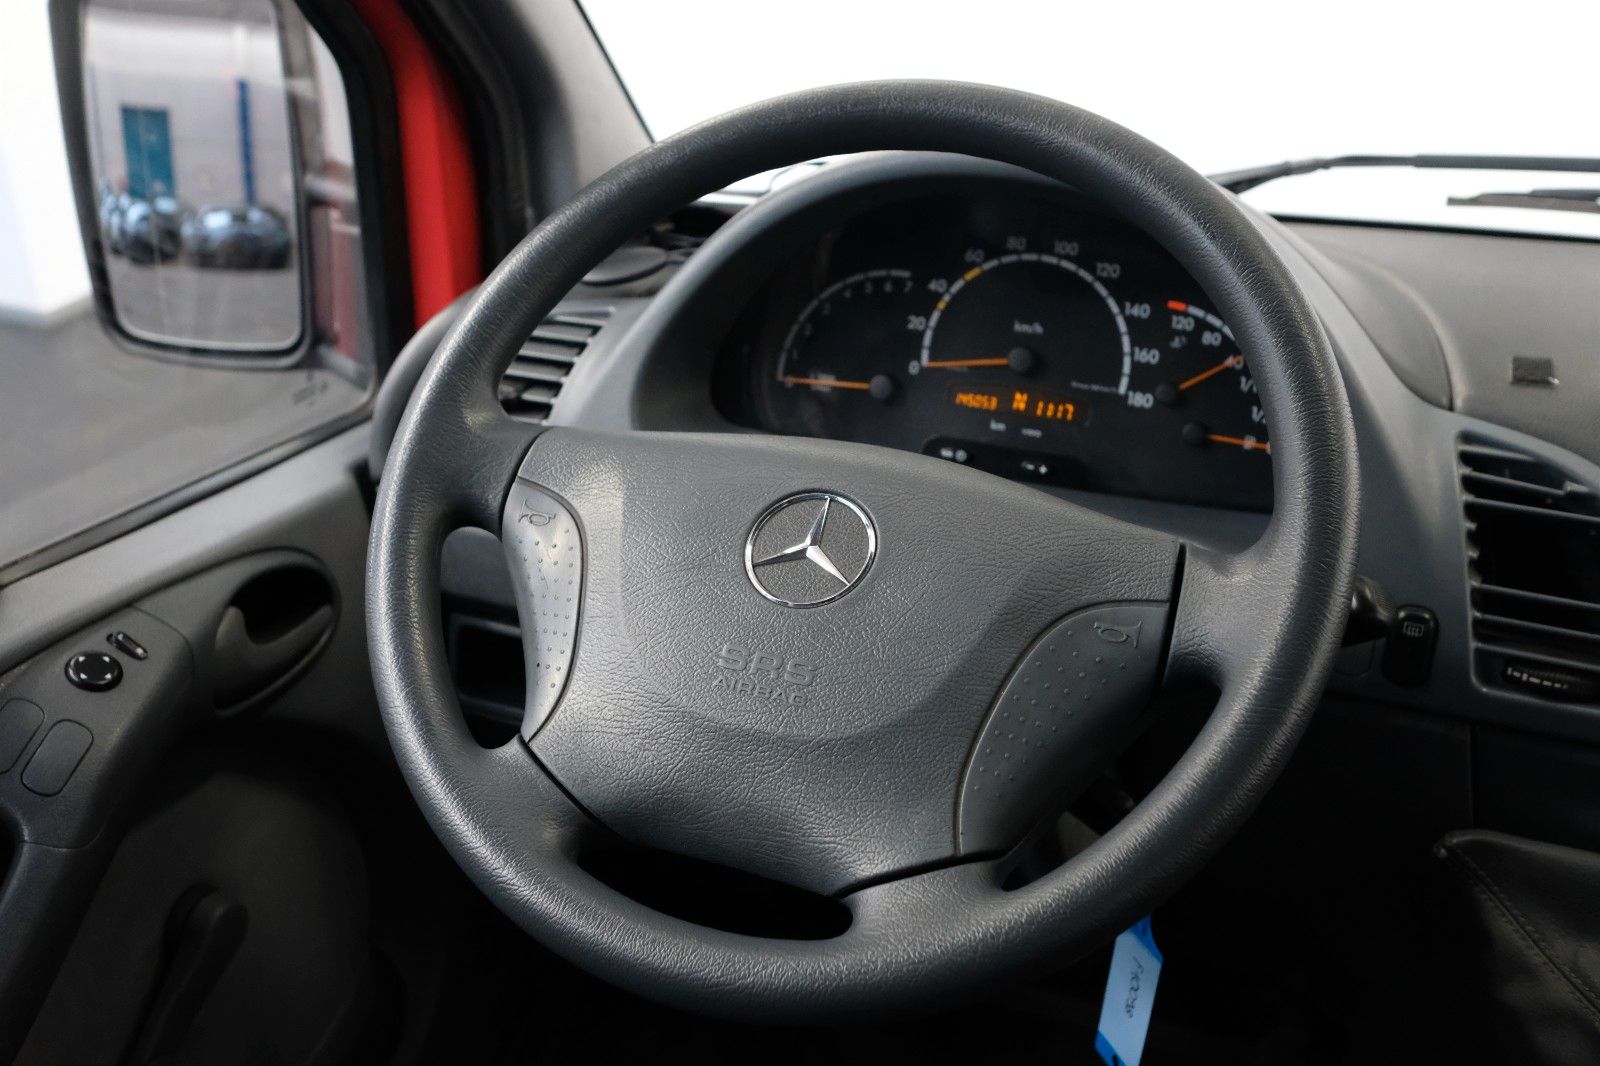 Fahrzeugabbildung Mercedes-Benz Sprinter Kombi 211 CDI 8-Sitzer EX-FEUERWEHR